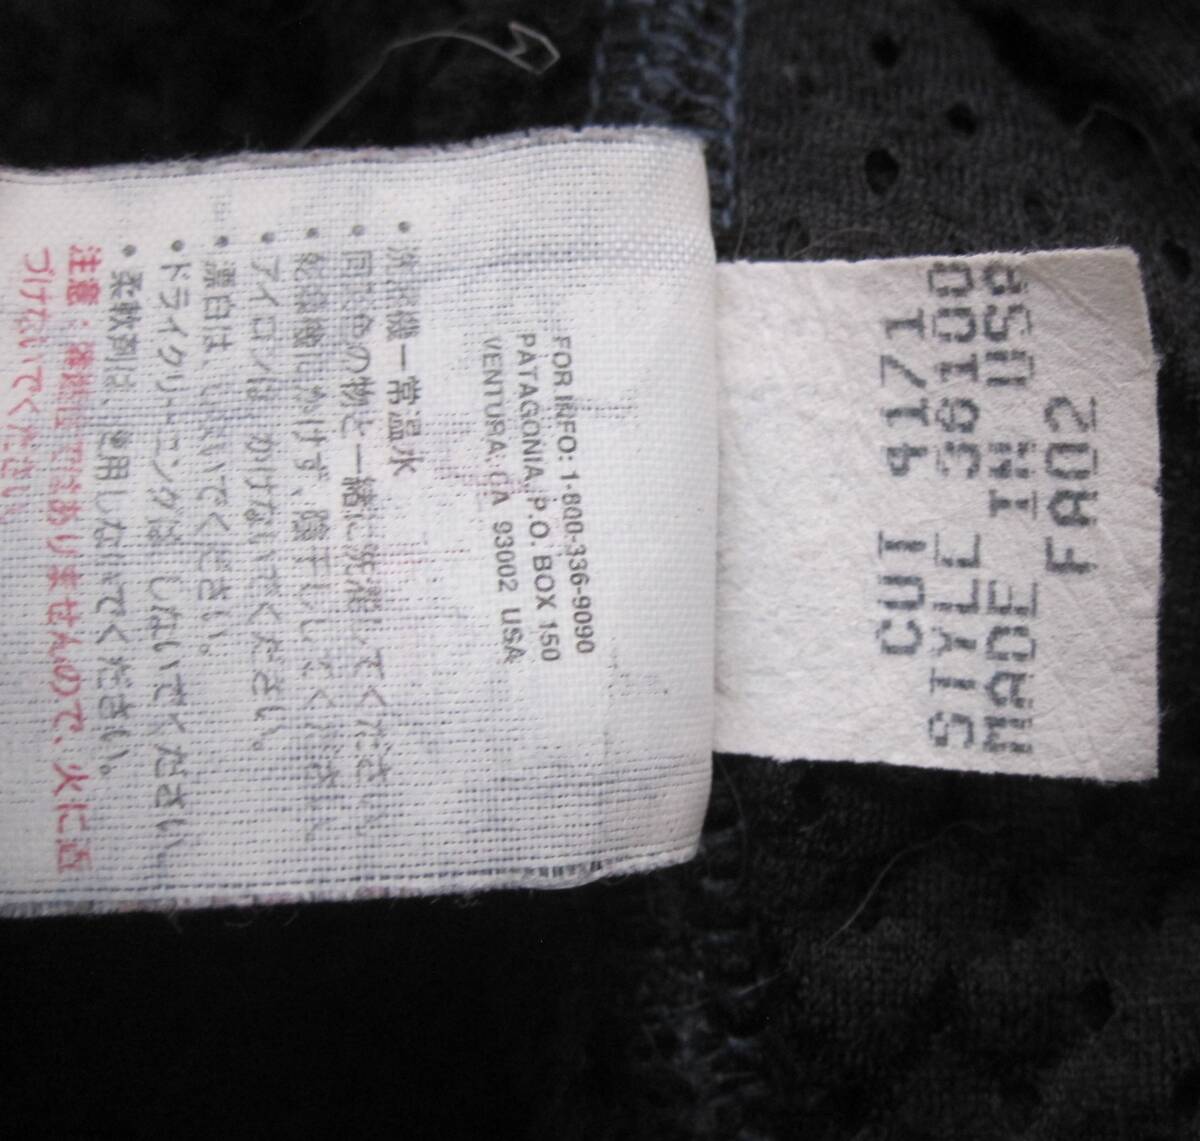 ☆'02 パタゴニア R4ジャケット (L) PEWTER / 刺繍タグ / USA製 / ビンテージ / R2 / レトロ / レアカラー_画像7